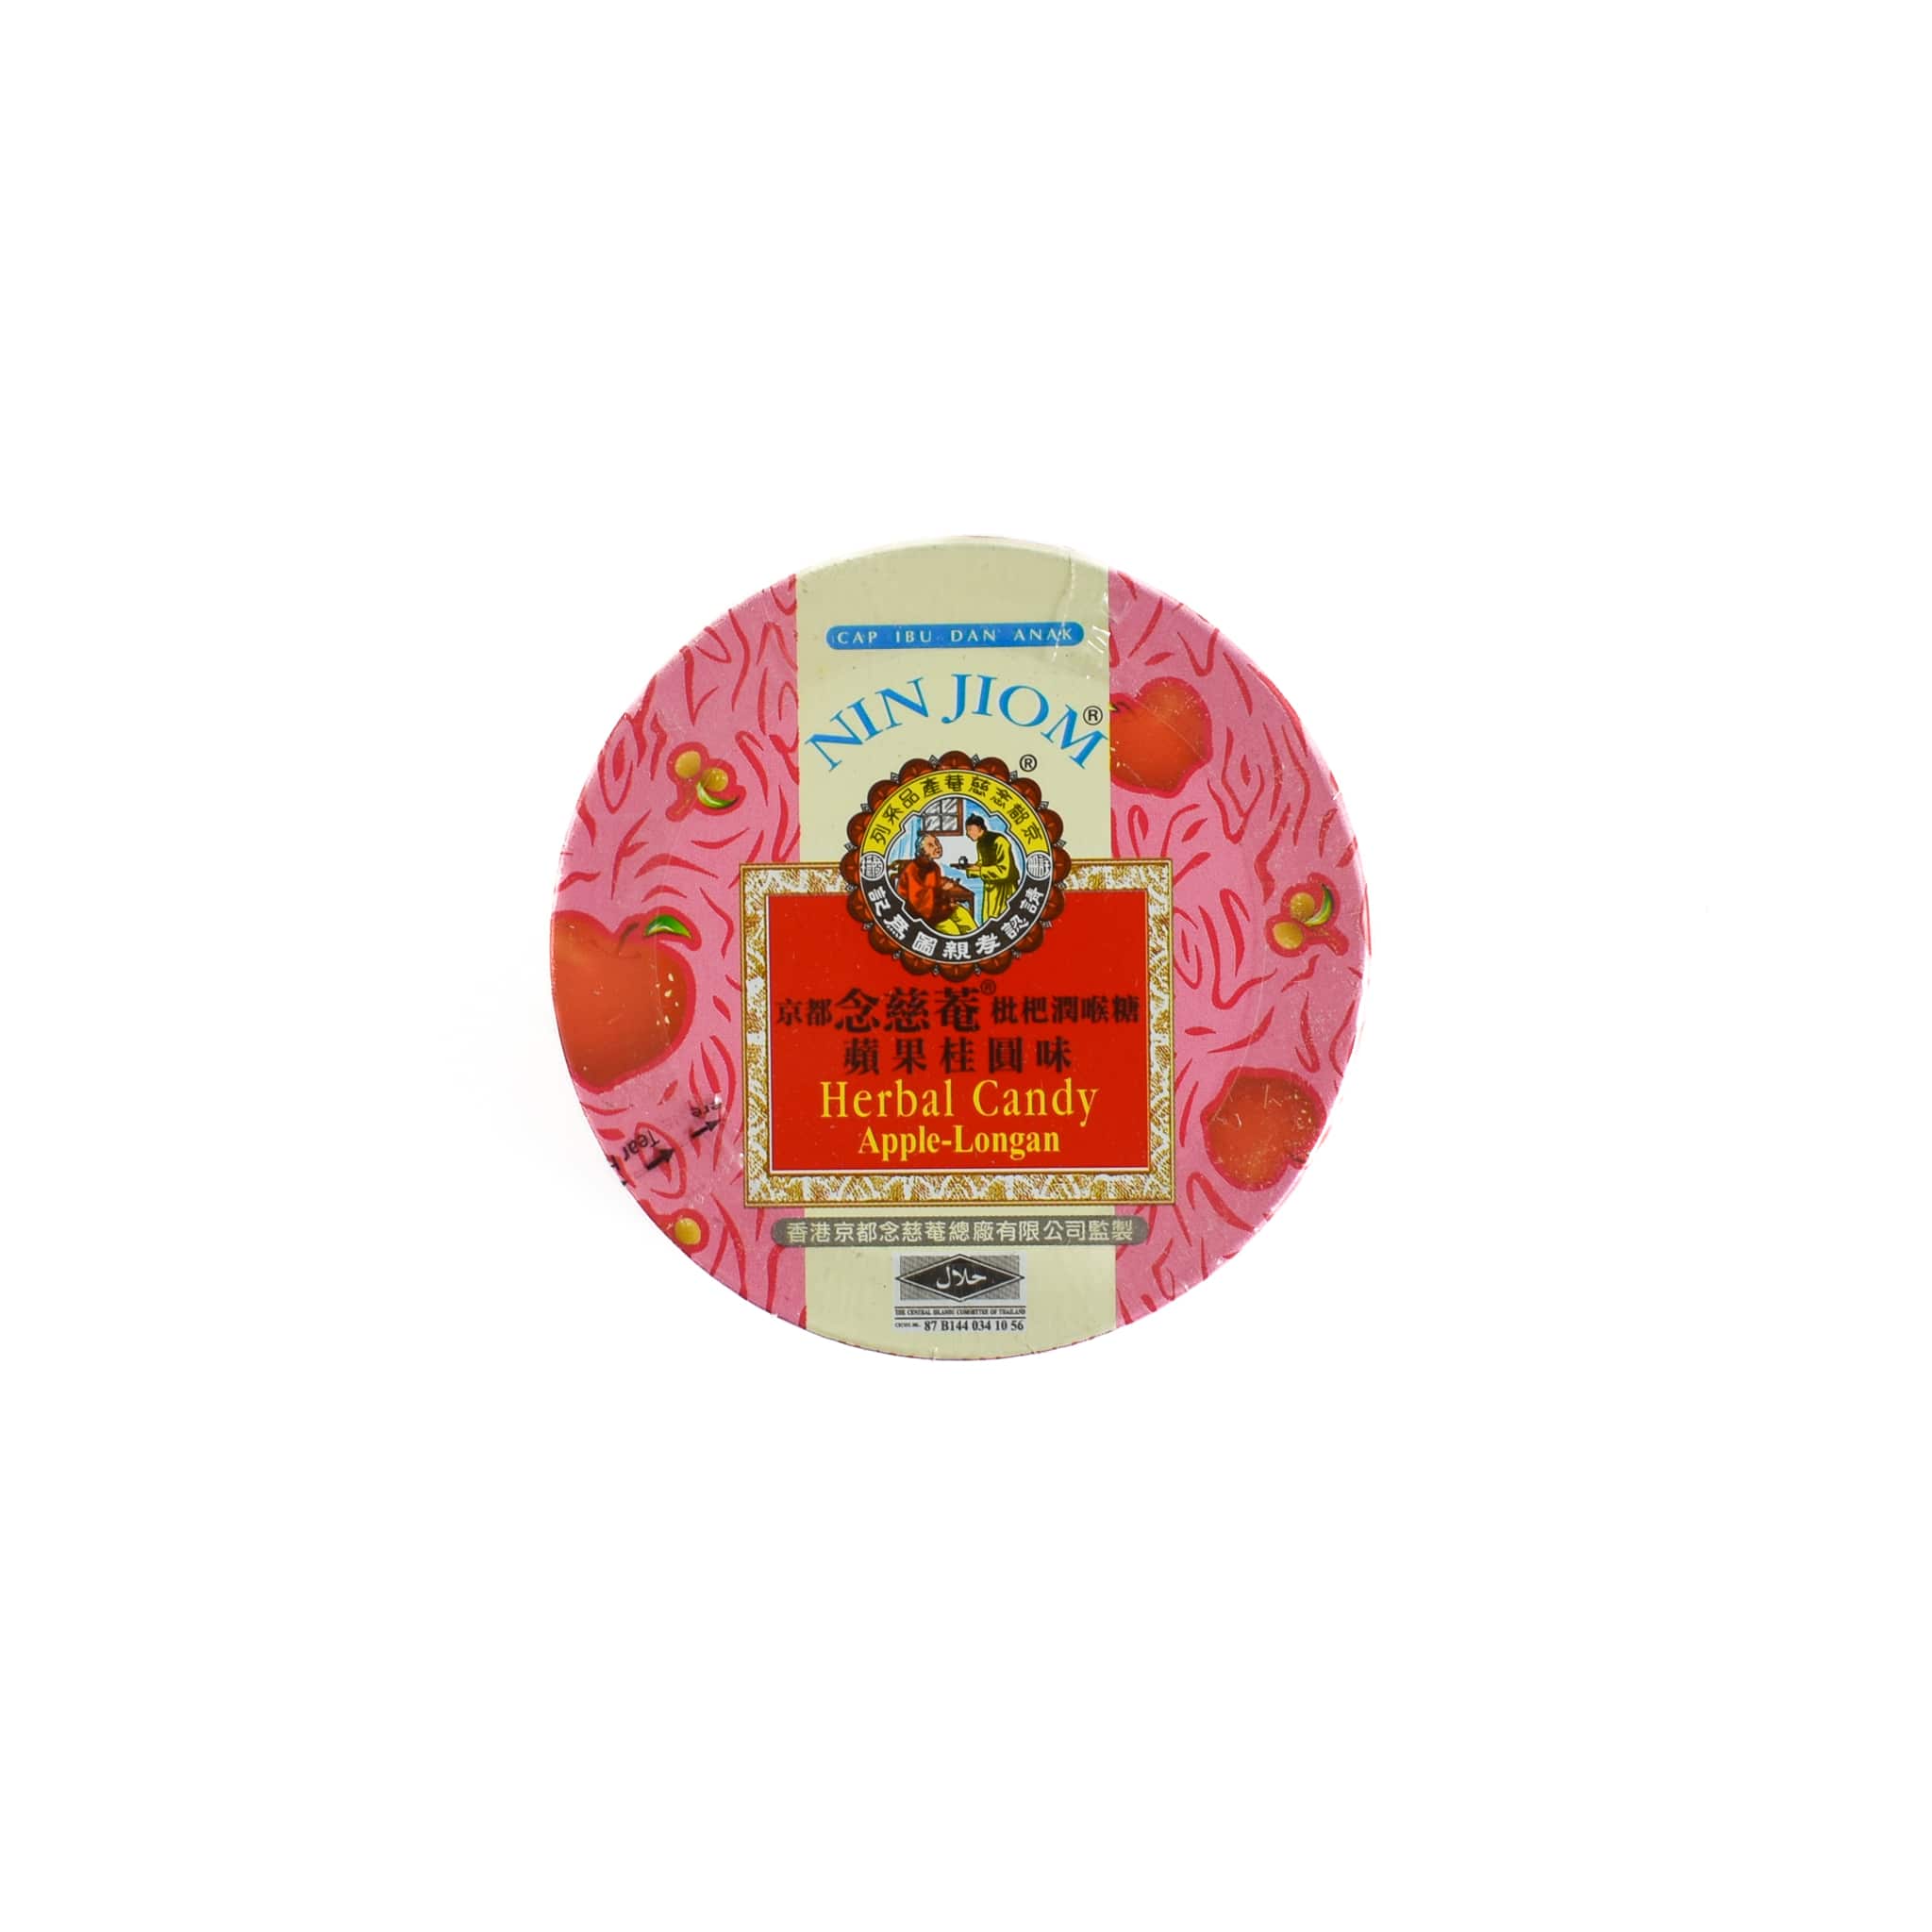 Apple & Longan Herbal Candy, 60g